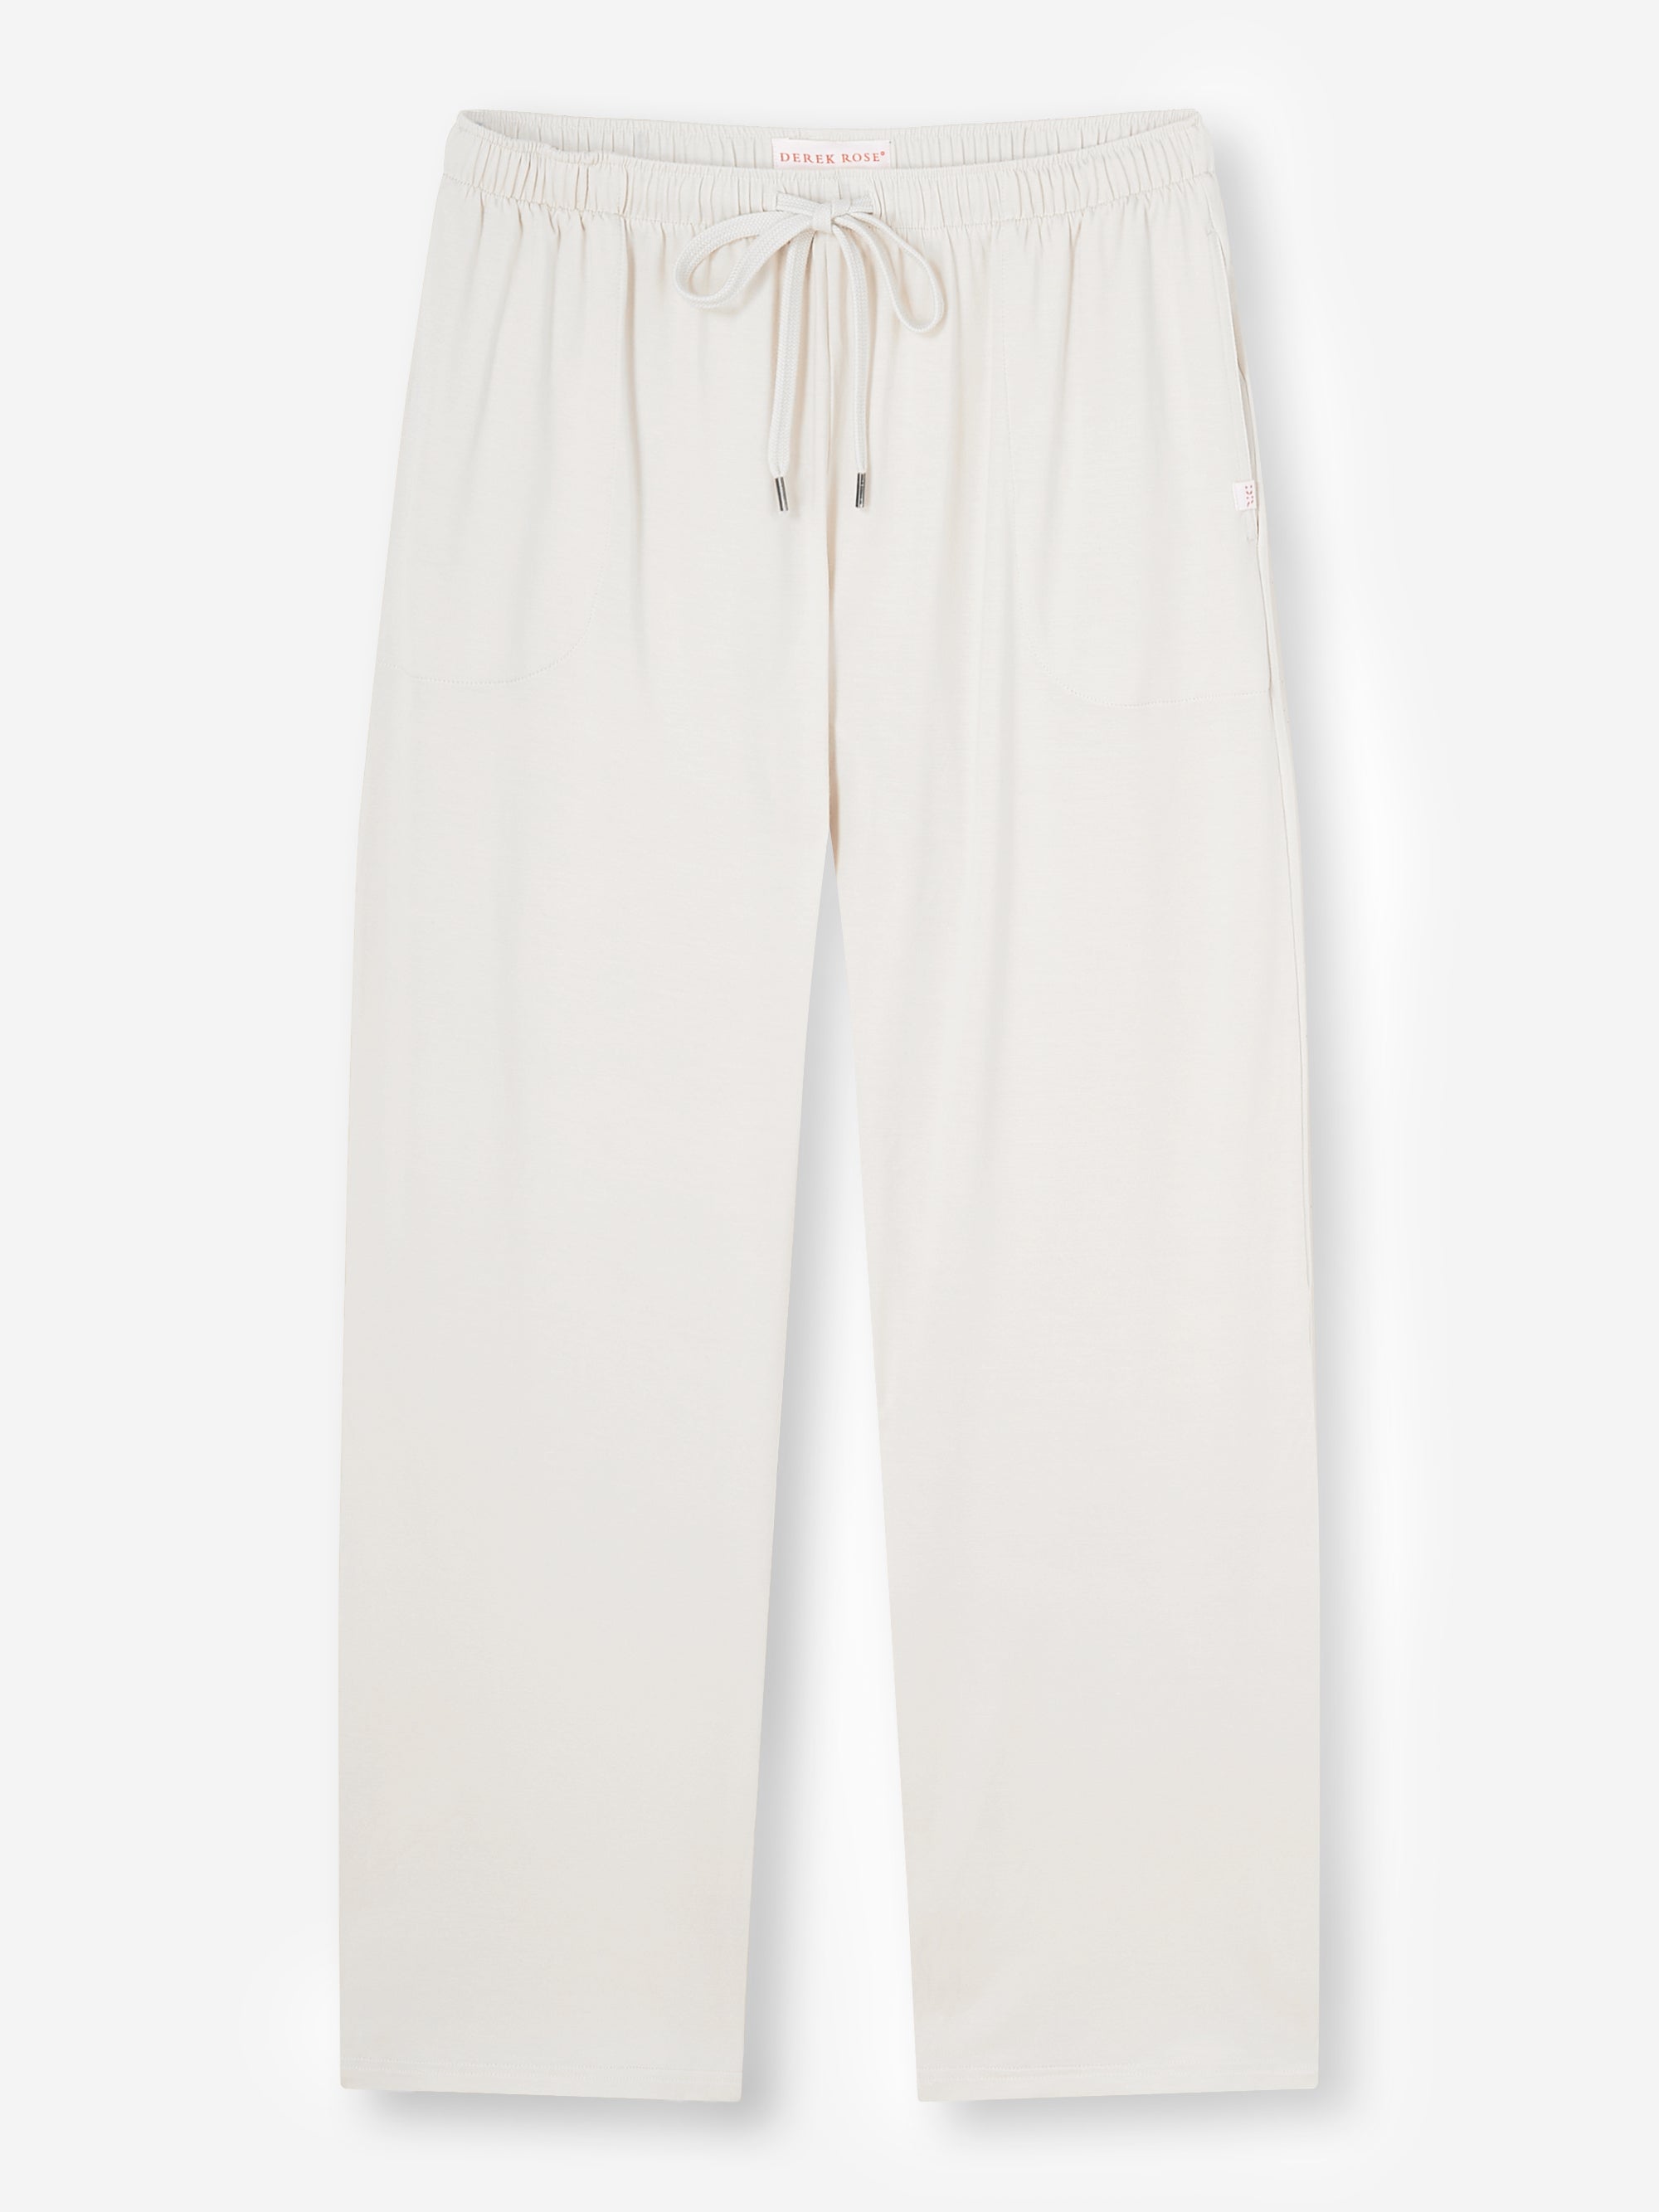 Men's Lounge Trousers Basel Micro Modal Stretch White